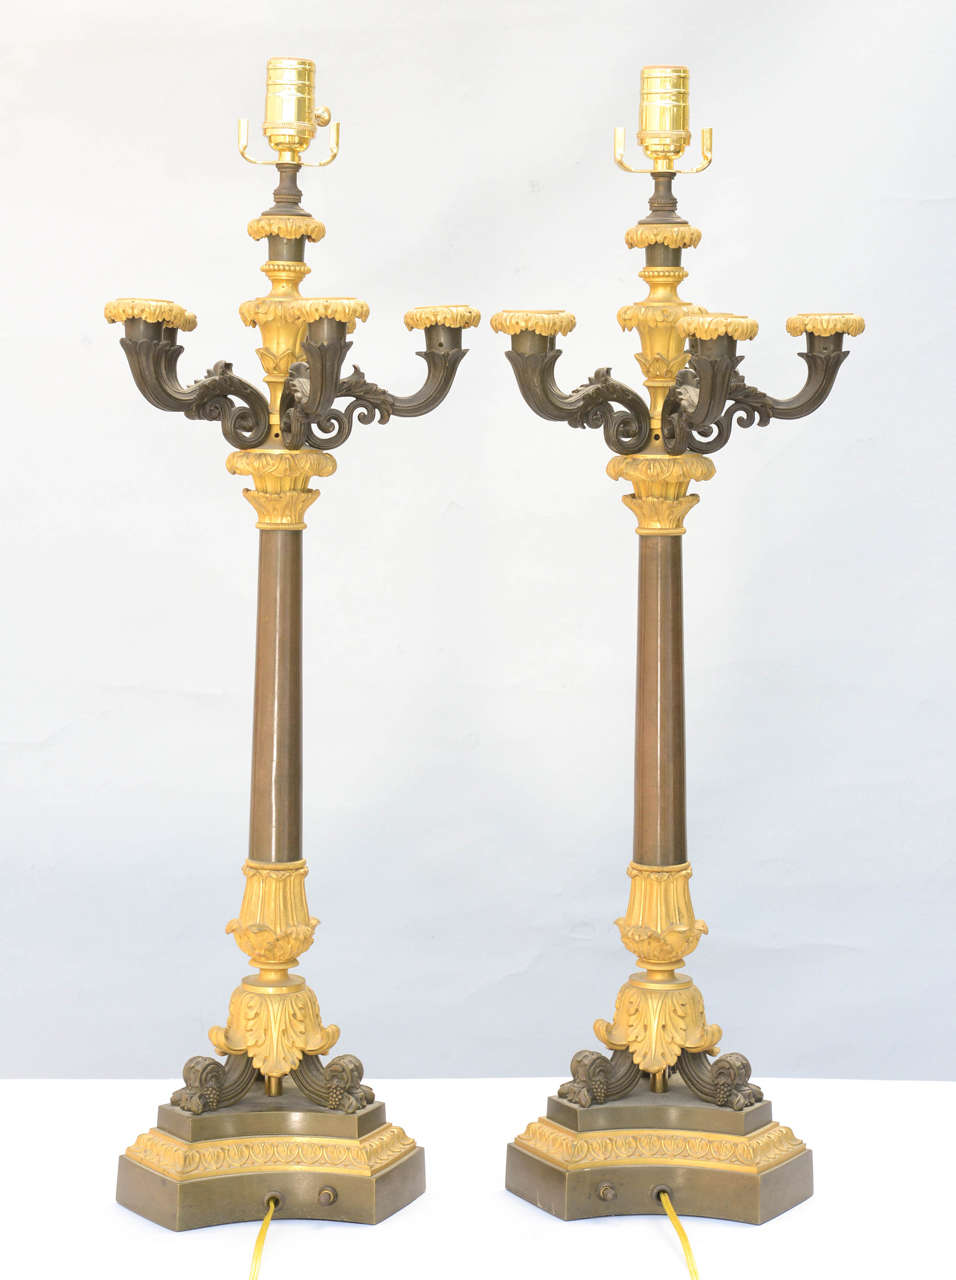 Paar Kerzenständer aus patinierter und geäderter Bronze, jeder mit fünf geschwungenen Kerzenarmen, auf dreiteiligem Sockel; beleuchtet.

Lager-ID: D9163